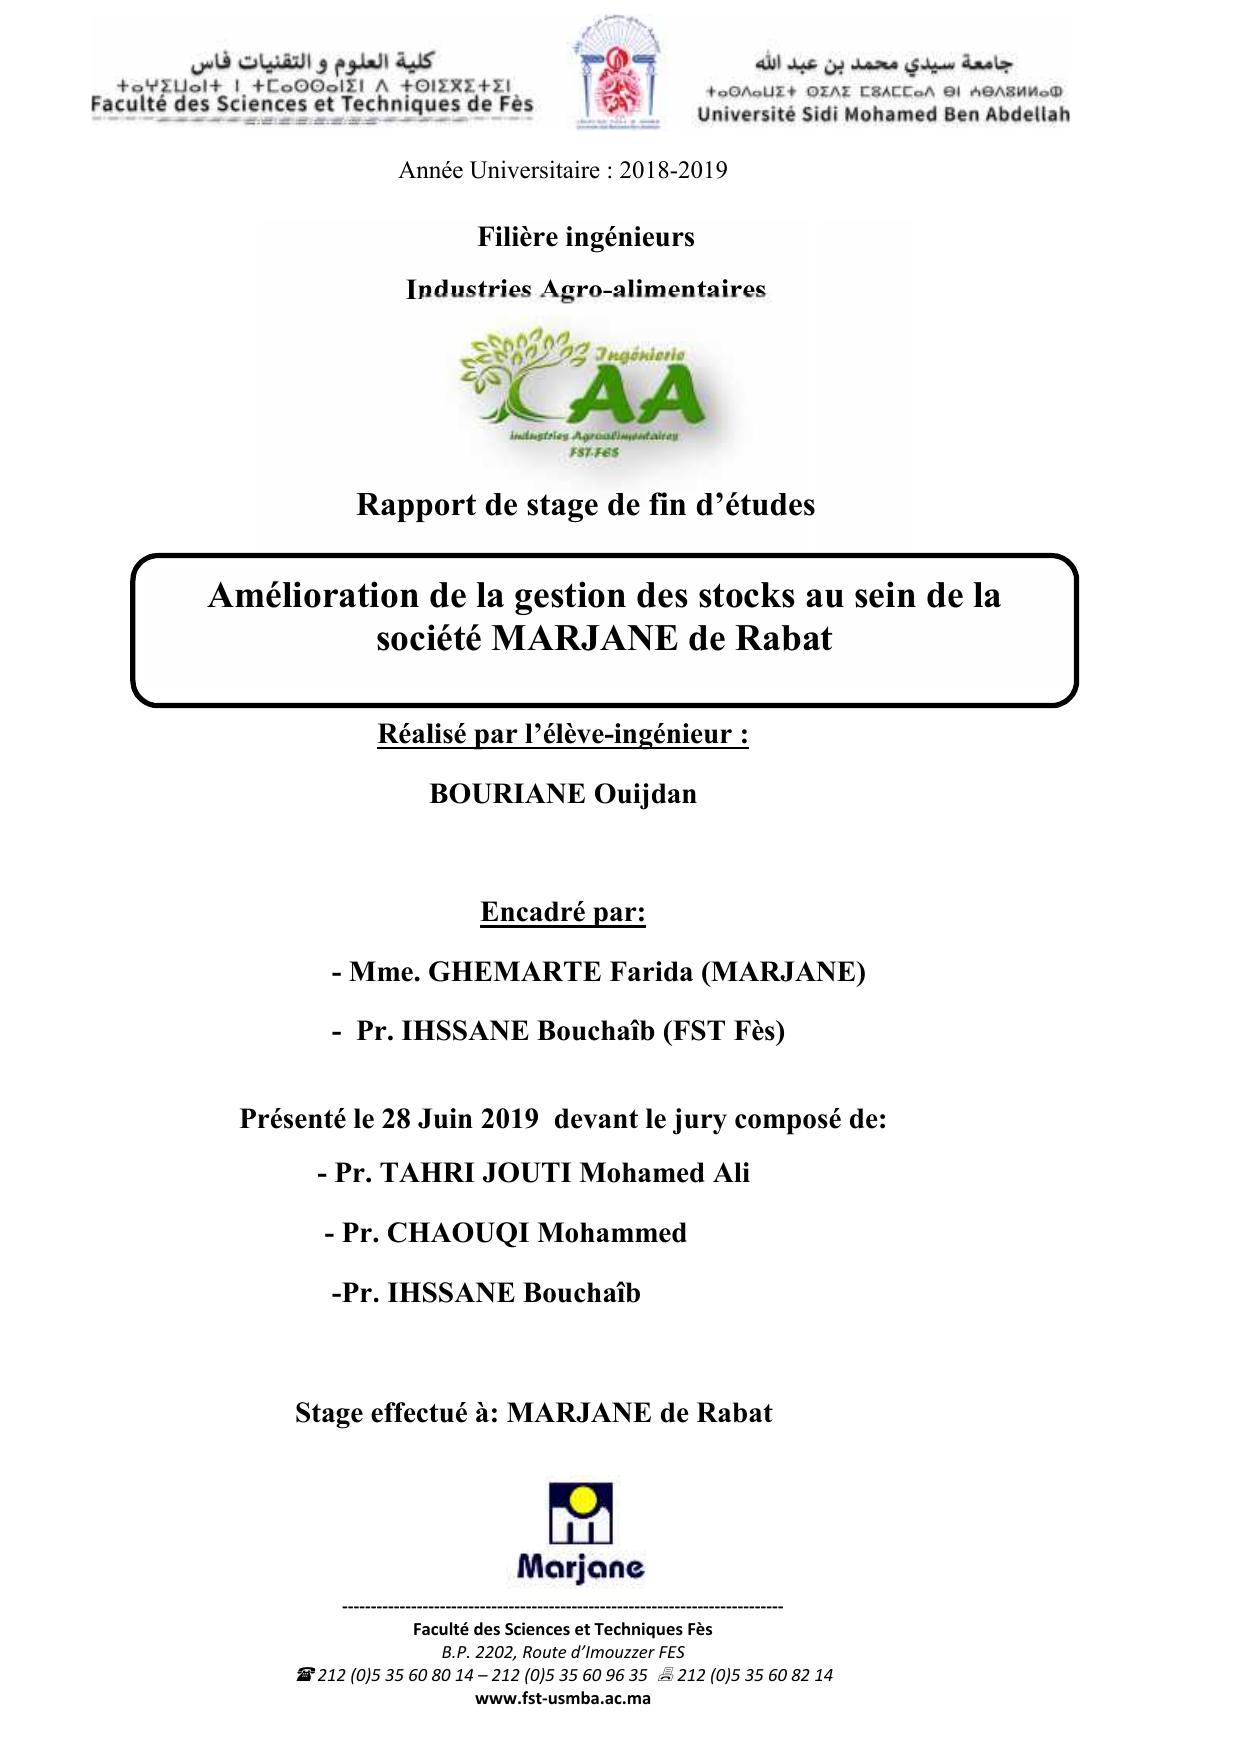 Amélioration de la gestion des stocks au sein de la société MARJANE de Rabat